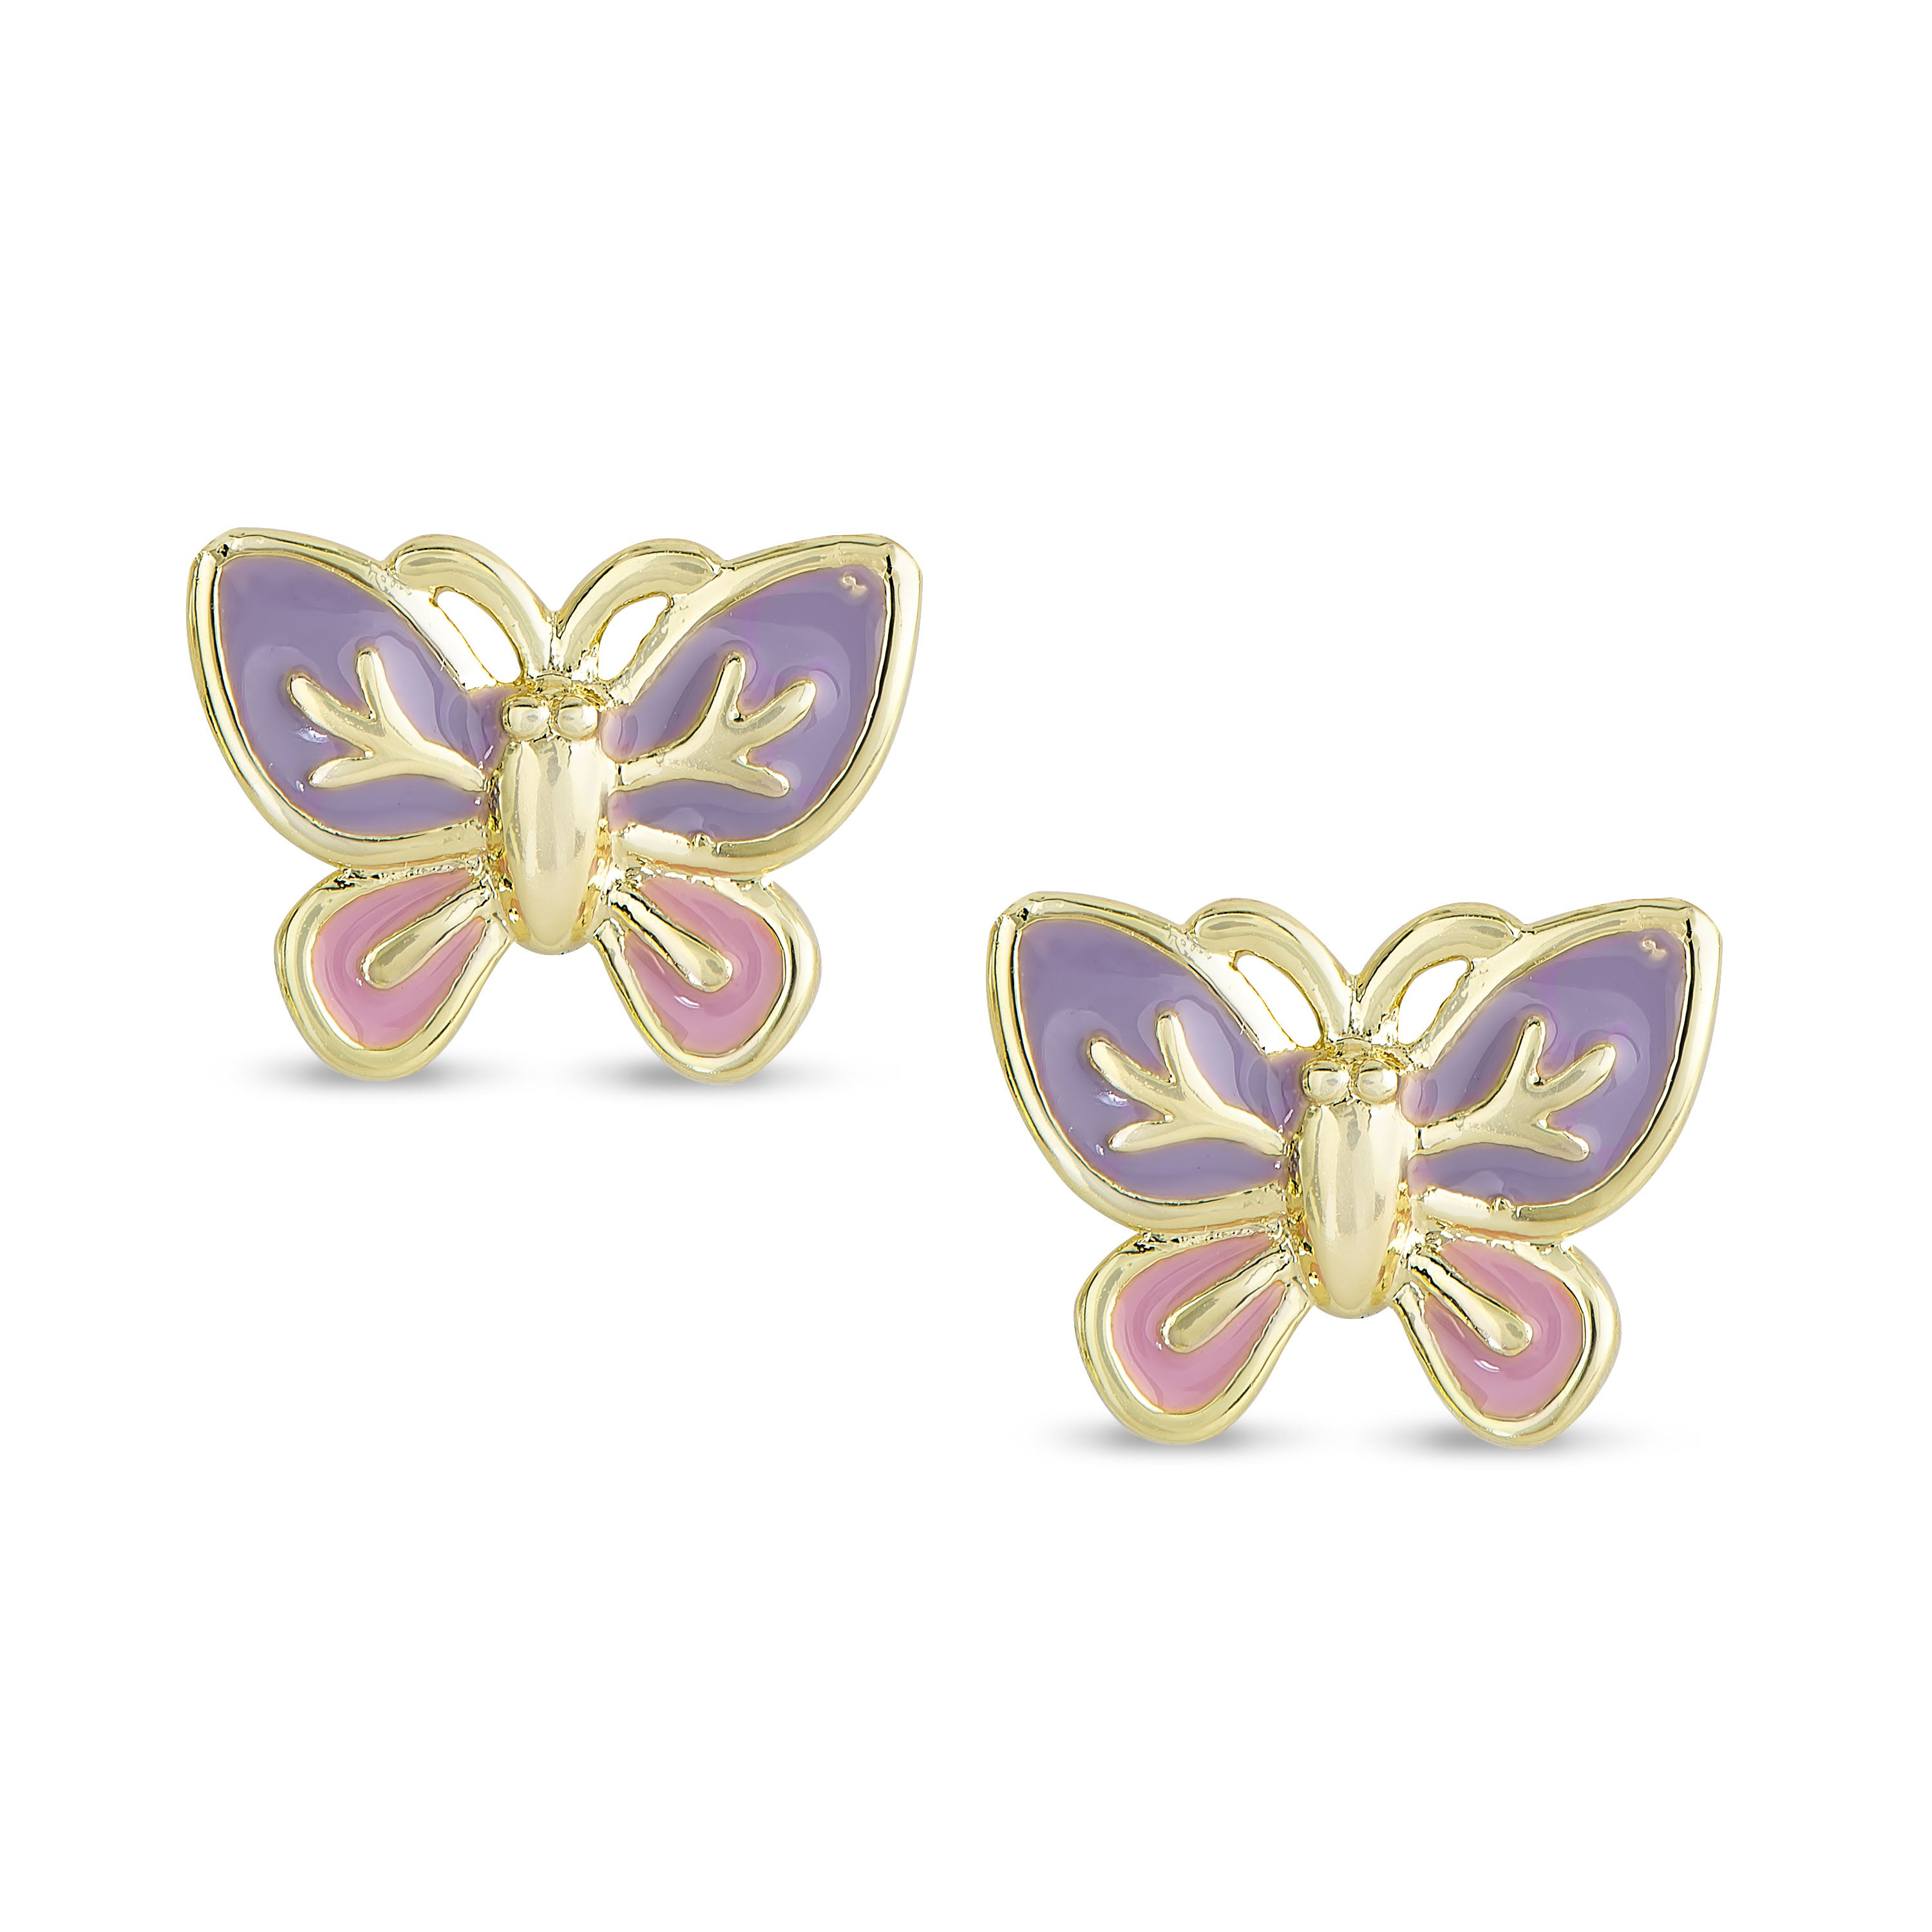 Buy Gold Flower Stud Earrings, Tiny Flower Earrings, Girls Earrings, Small Stud  Earrings, Flower Earrings, Bat Mitzvah Gift, Gold Stud Earrings Online in  India - Etsy